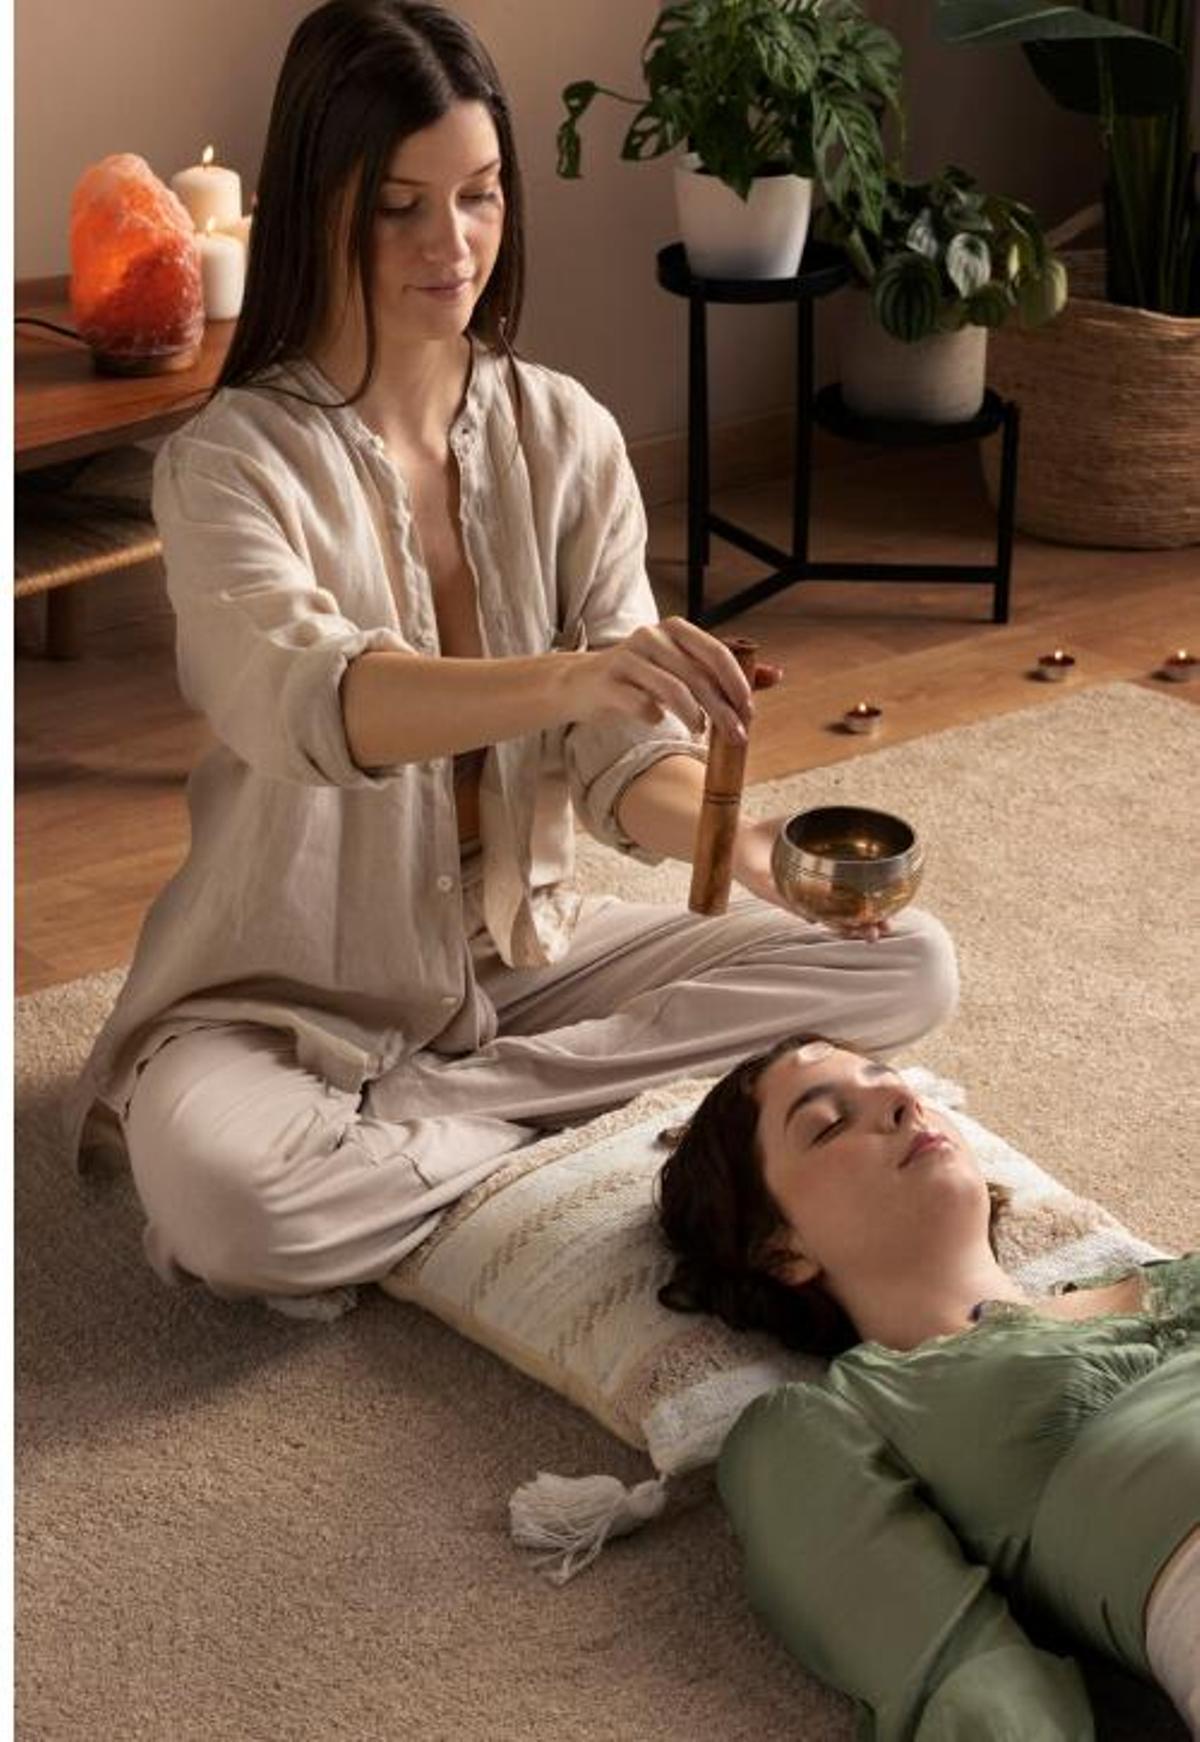 Fer sessions de banys de gong per calmar l'ansietat i l'estrès